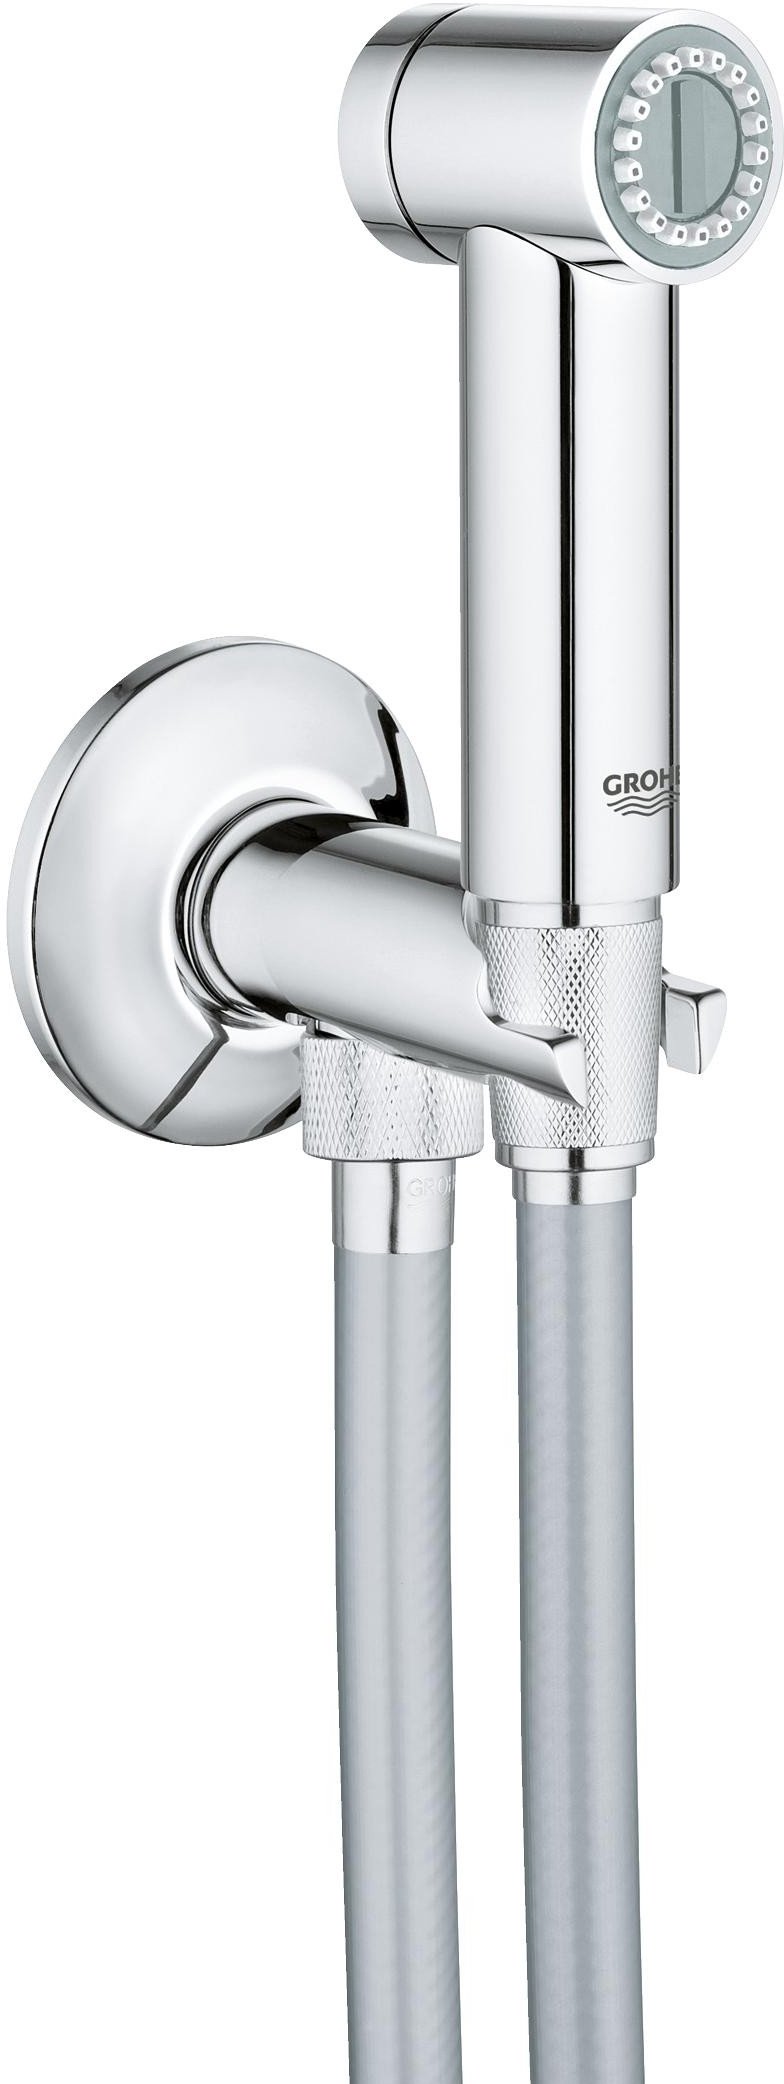 Гигиенический душ Grohe Sena Trigger Spray 26332000 со шлангом и держателем